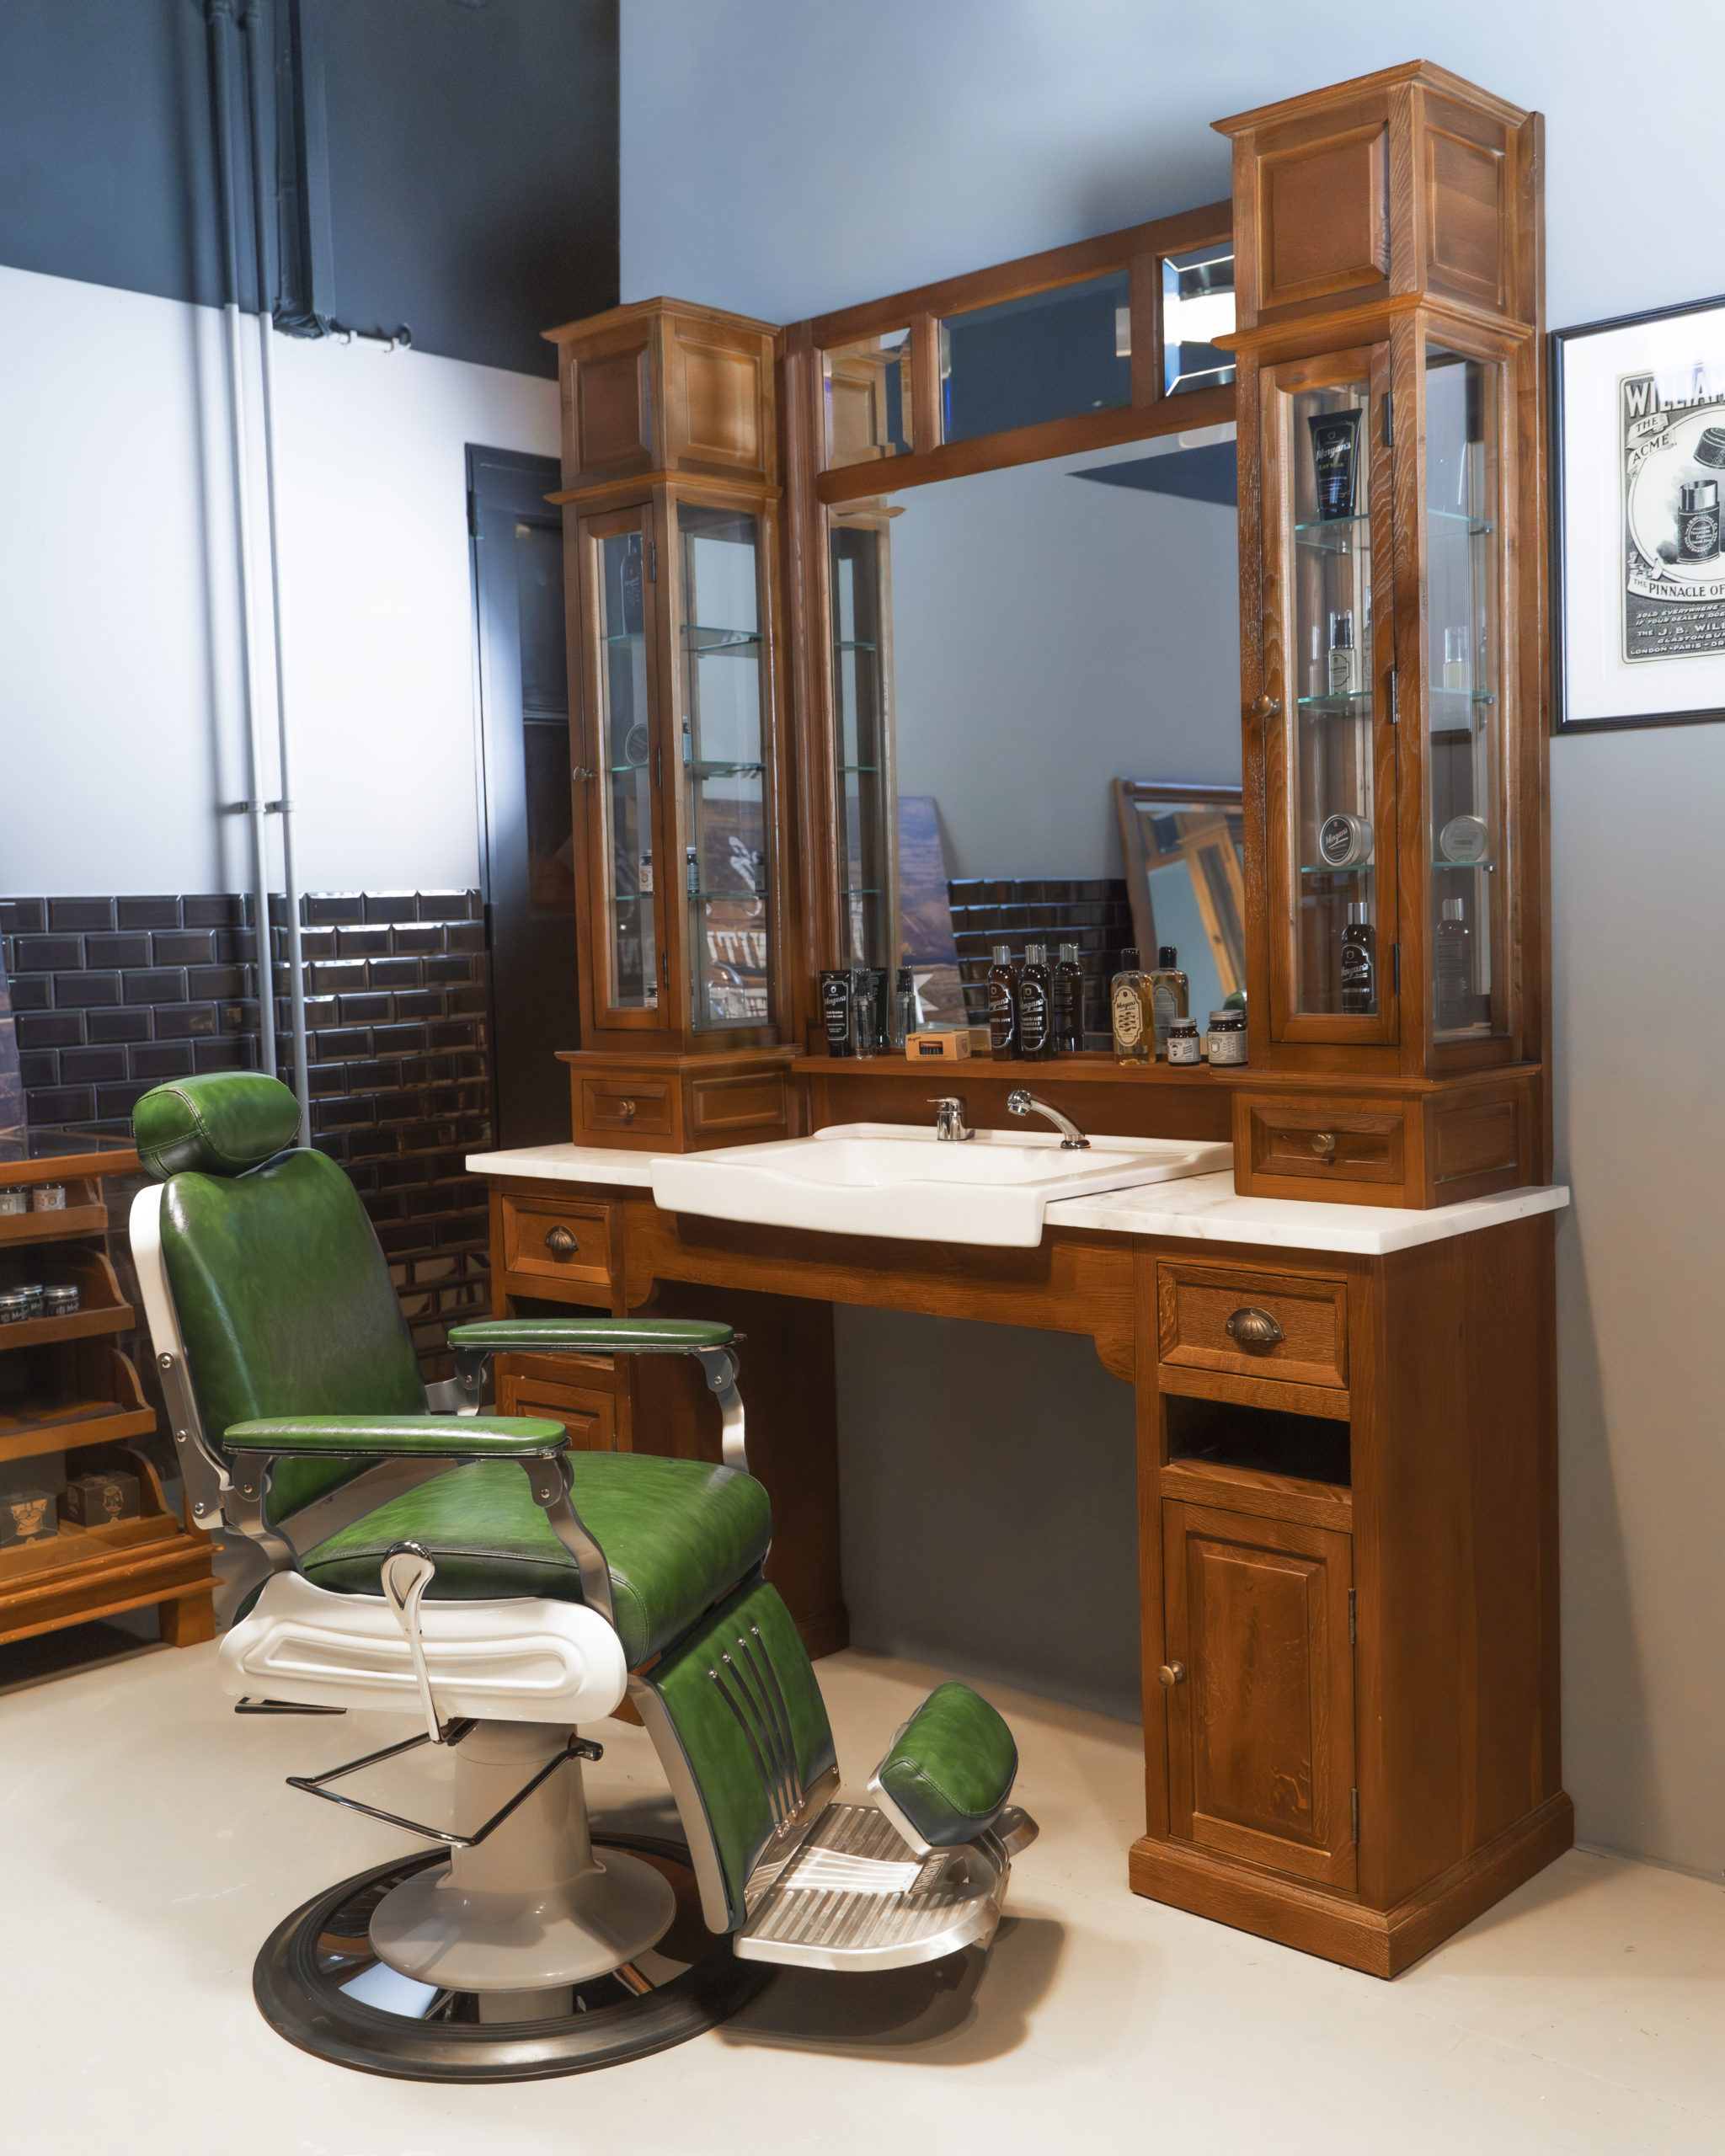 Barberunit | Classic barberfurniture | Oak wood | Barbershop furniture